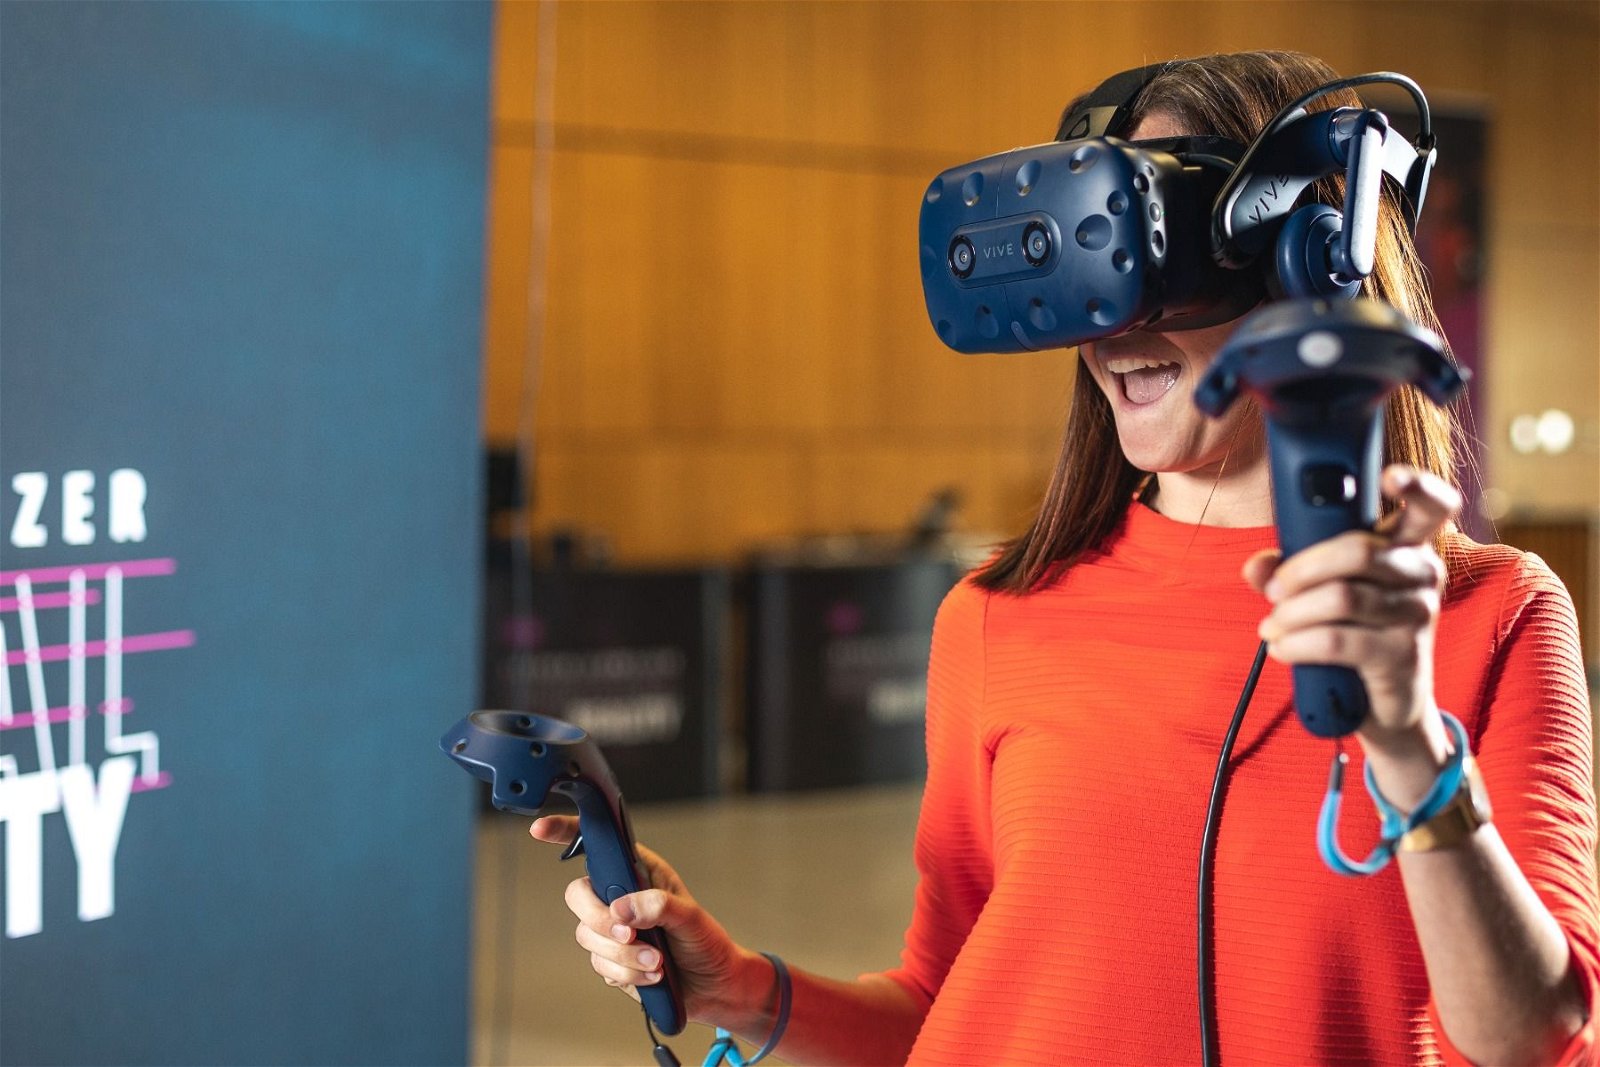 Bild - eine Frau mit einer VR Brille und 2 Controllern in der Hand